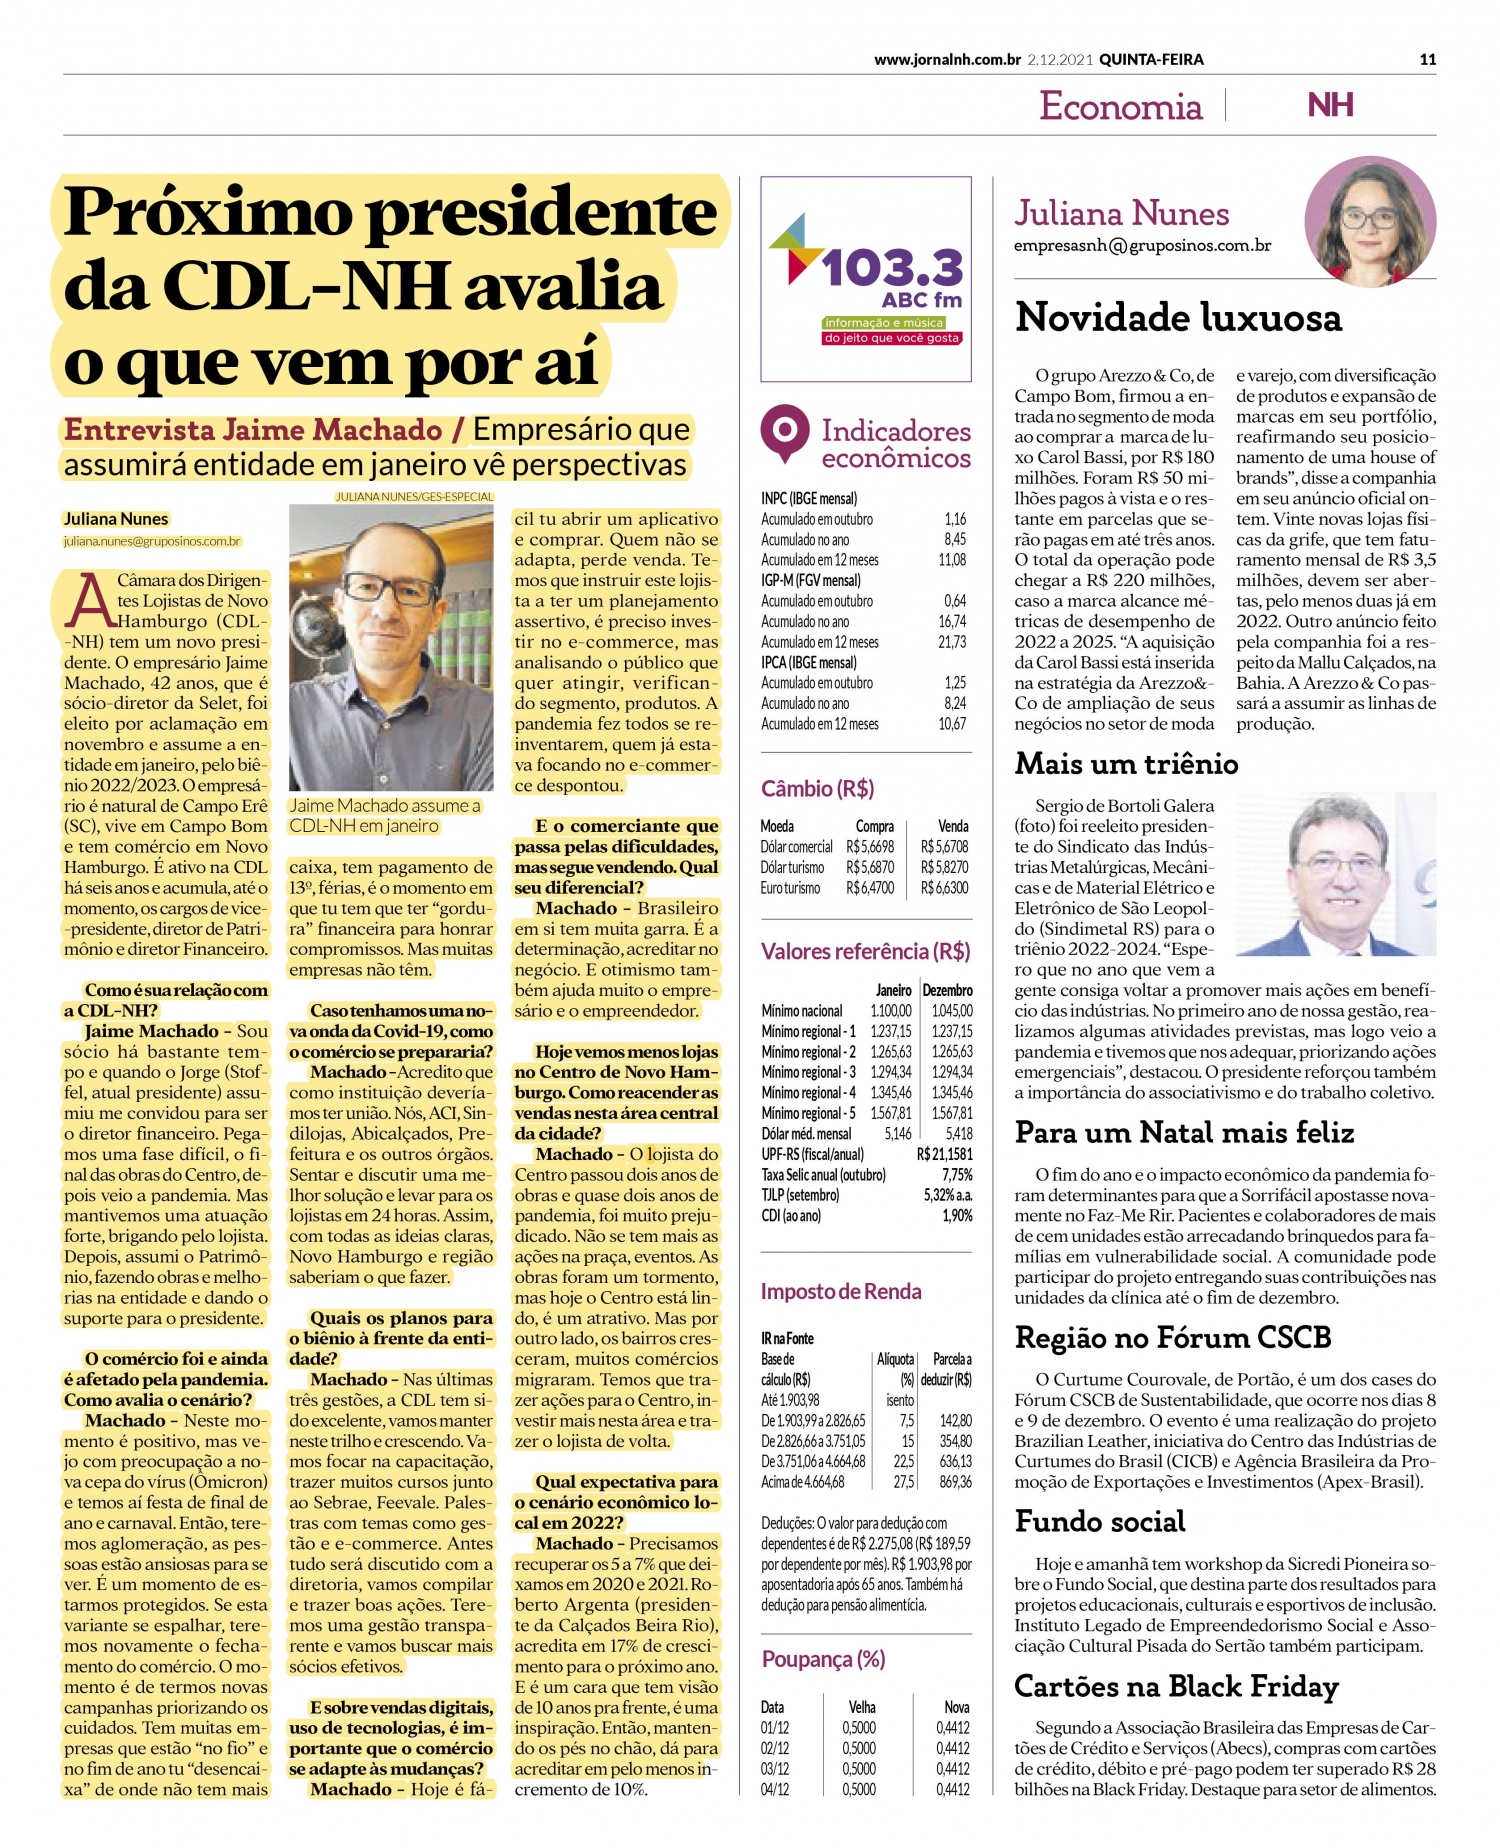 Confira a entrevista no jornal da região com o próximo presidente da CDL NH, Jaime Machado!